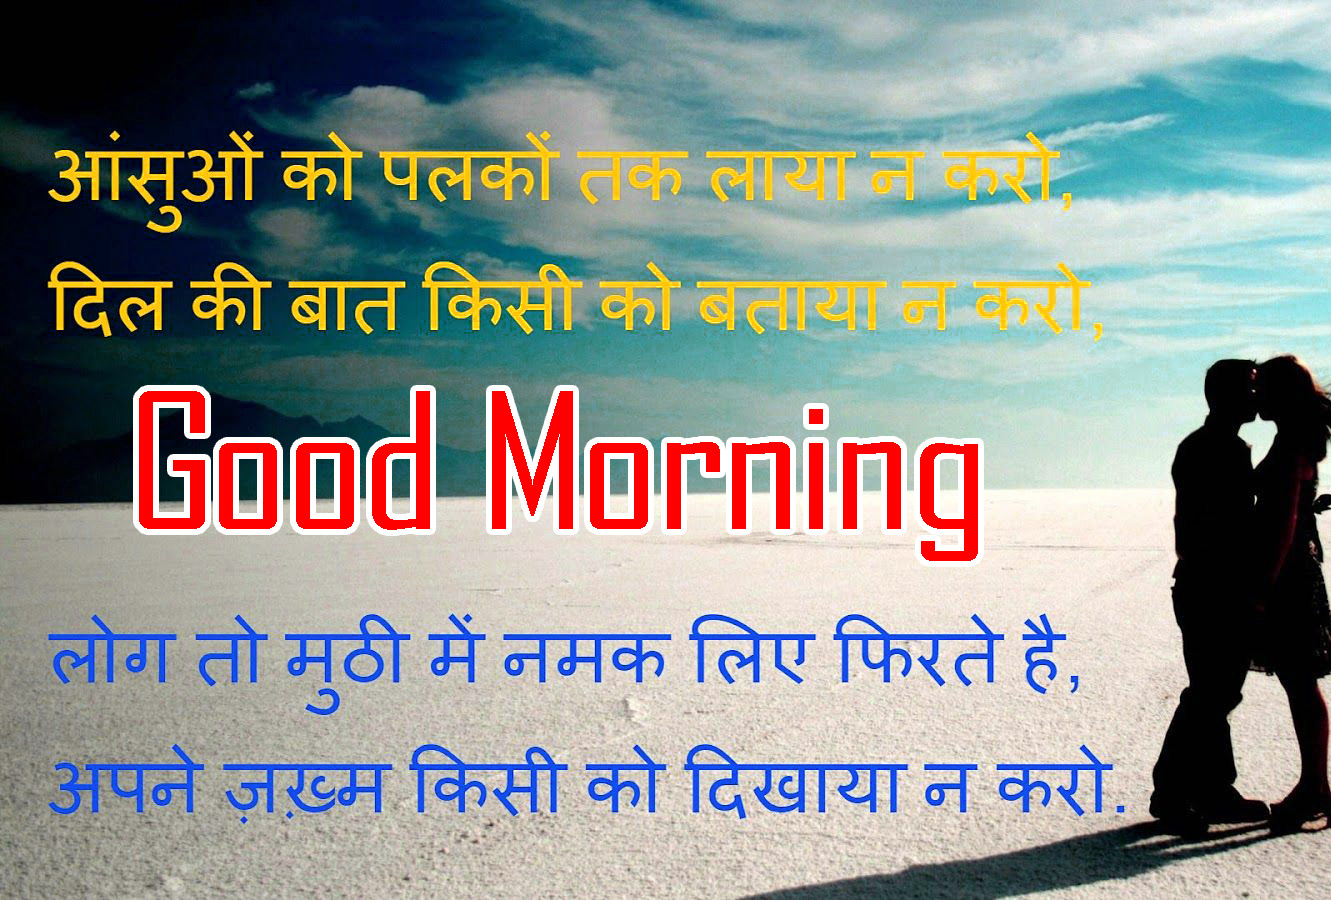 Hindi Quotes good morning pics